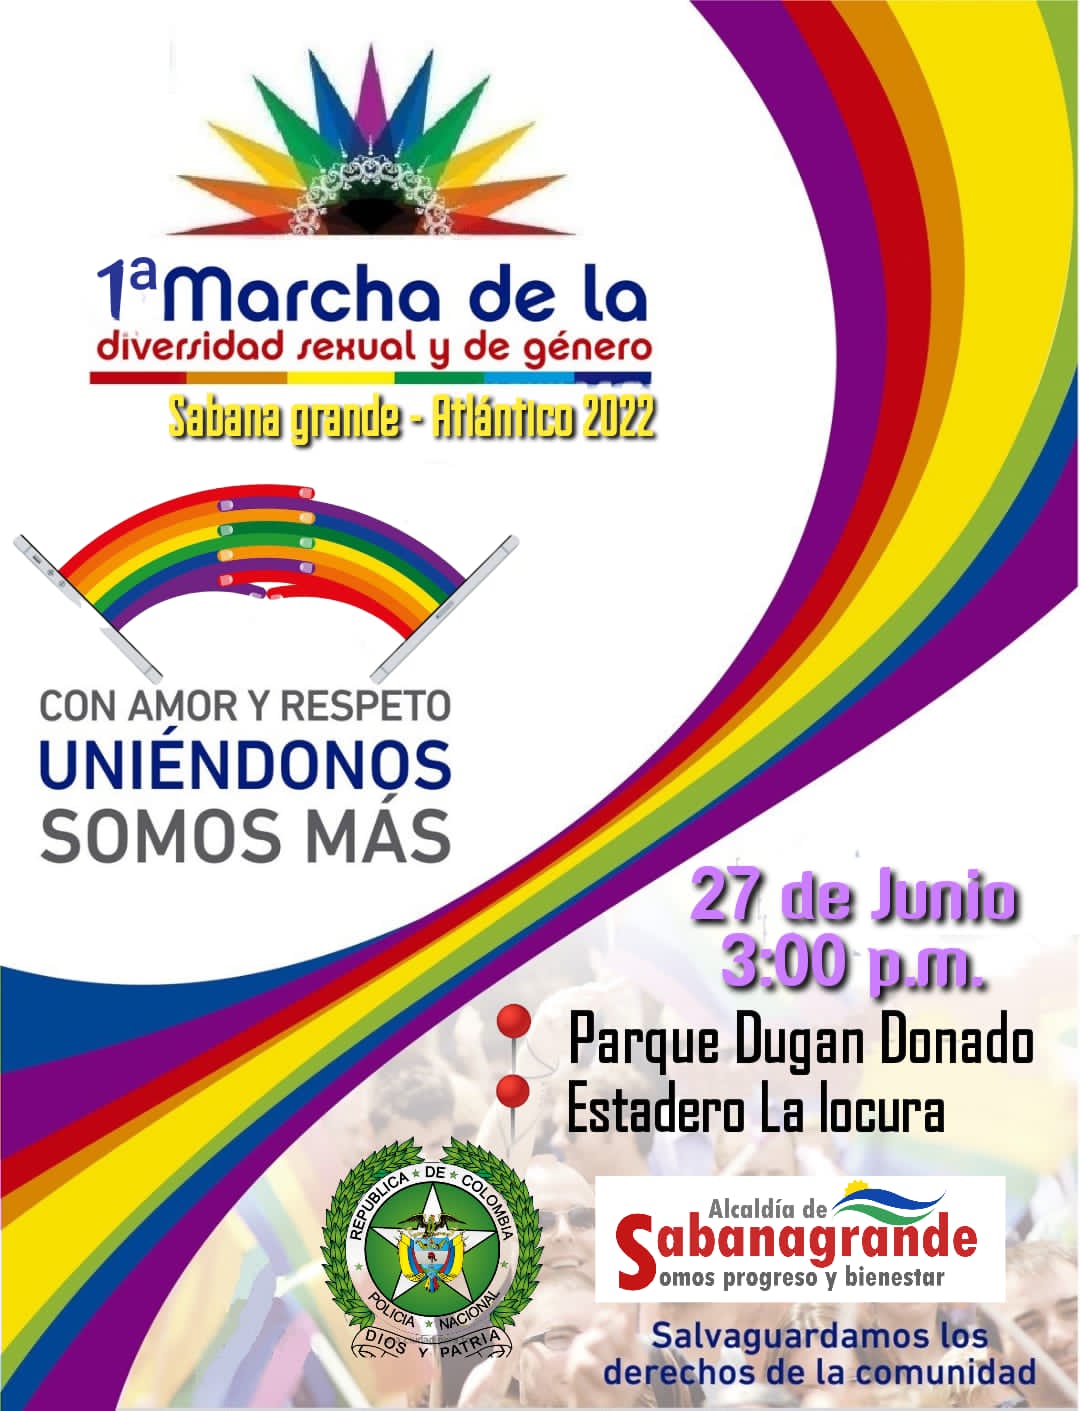  1 Marcha De La Diversidad Sexual Y De Gnero Sabana Grande 2022 [SABANA GRANDE] 